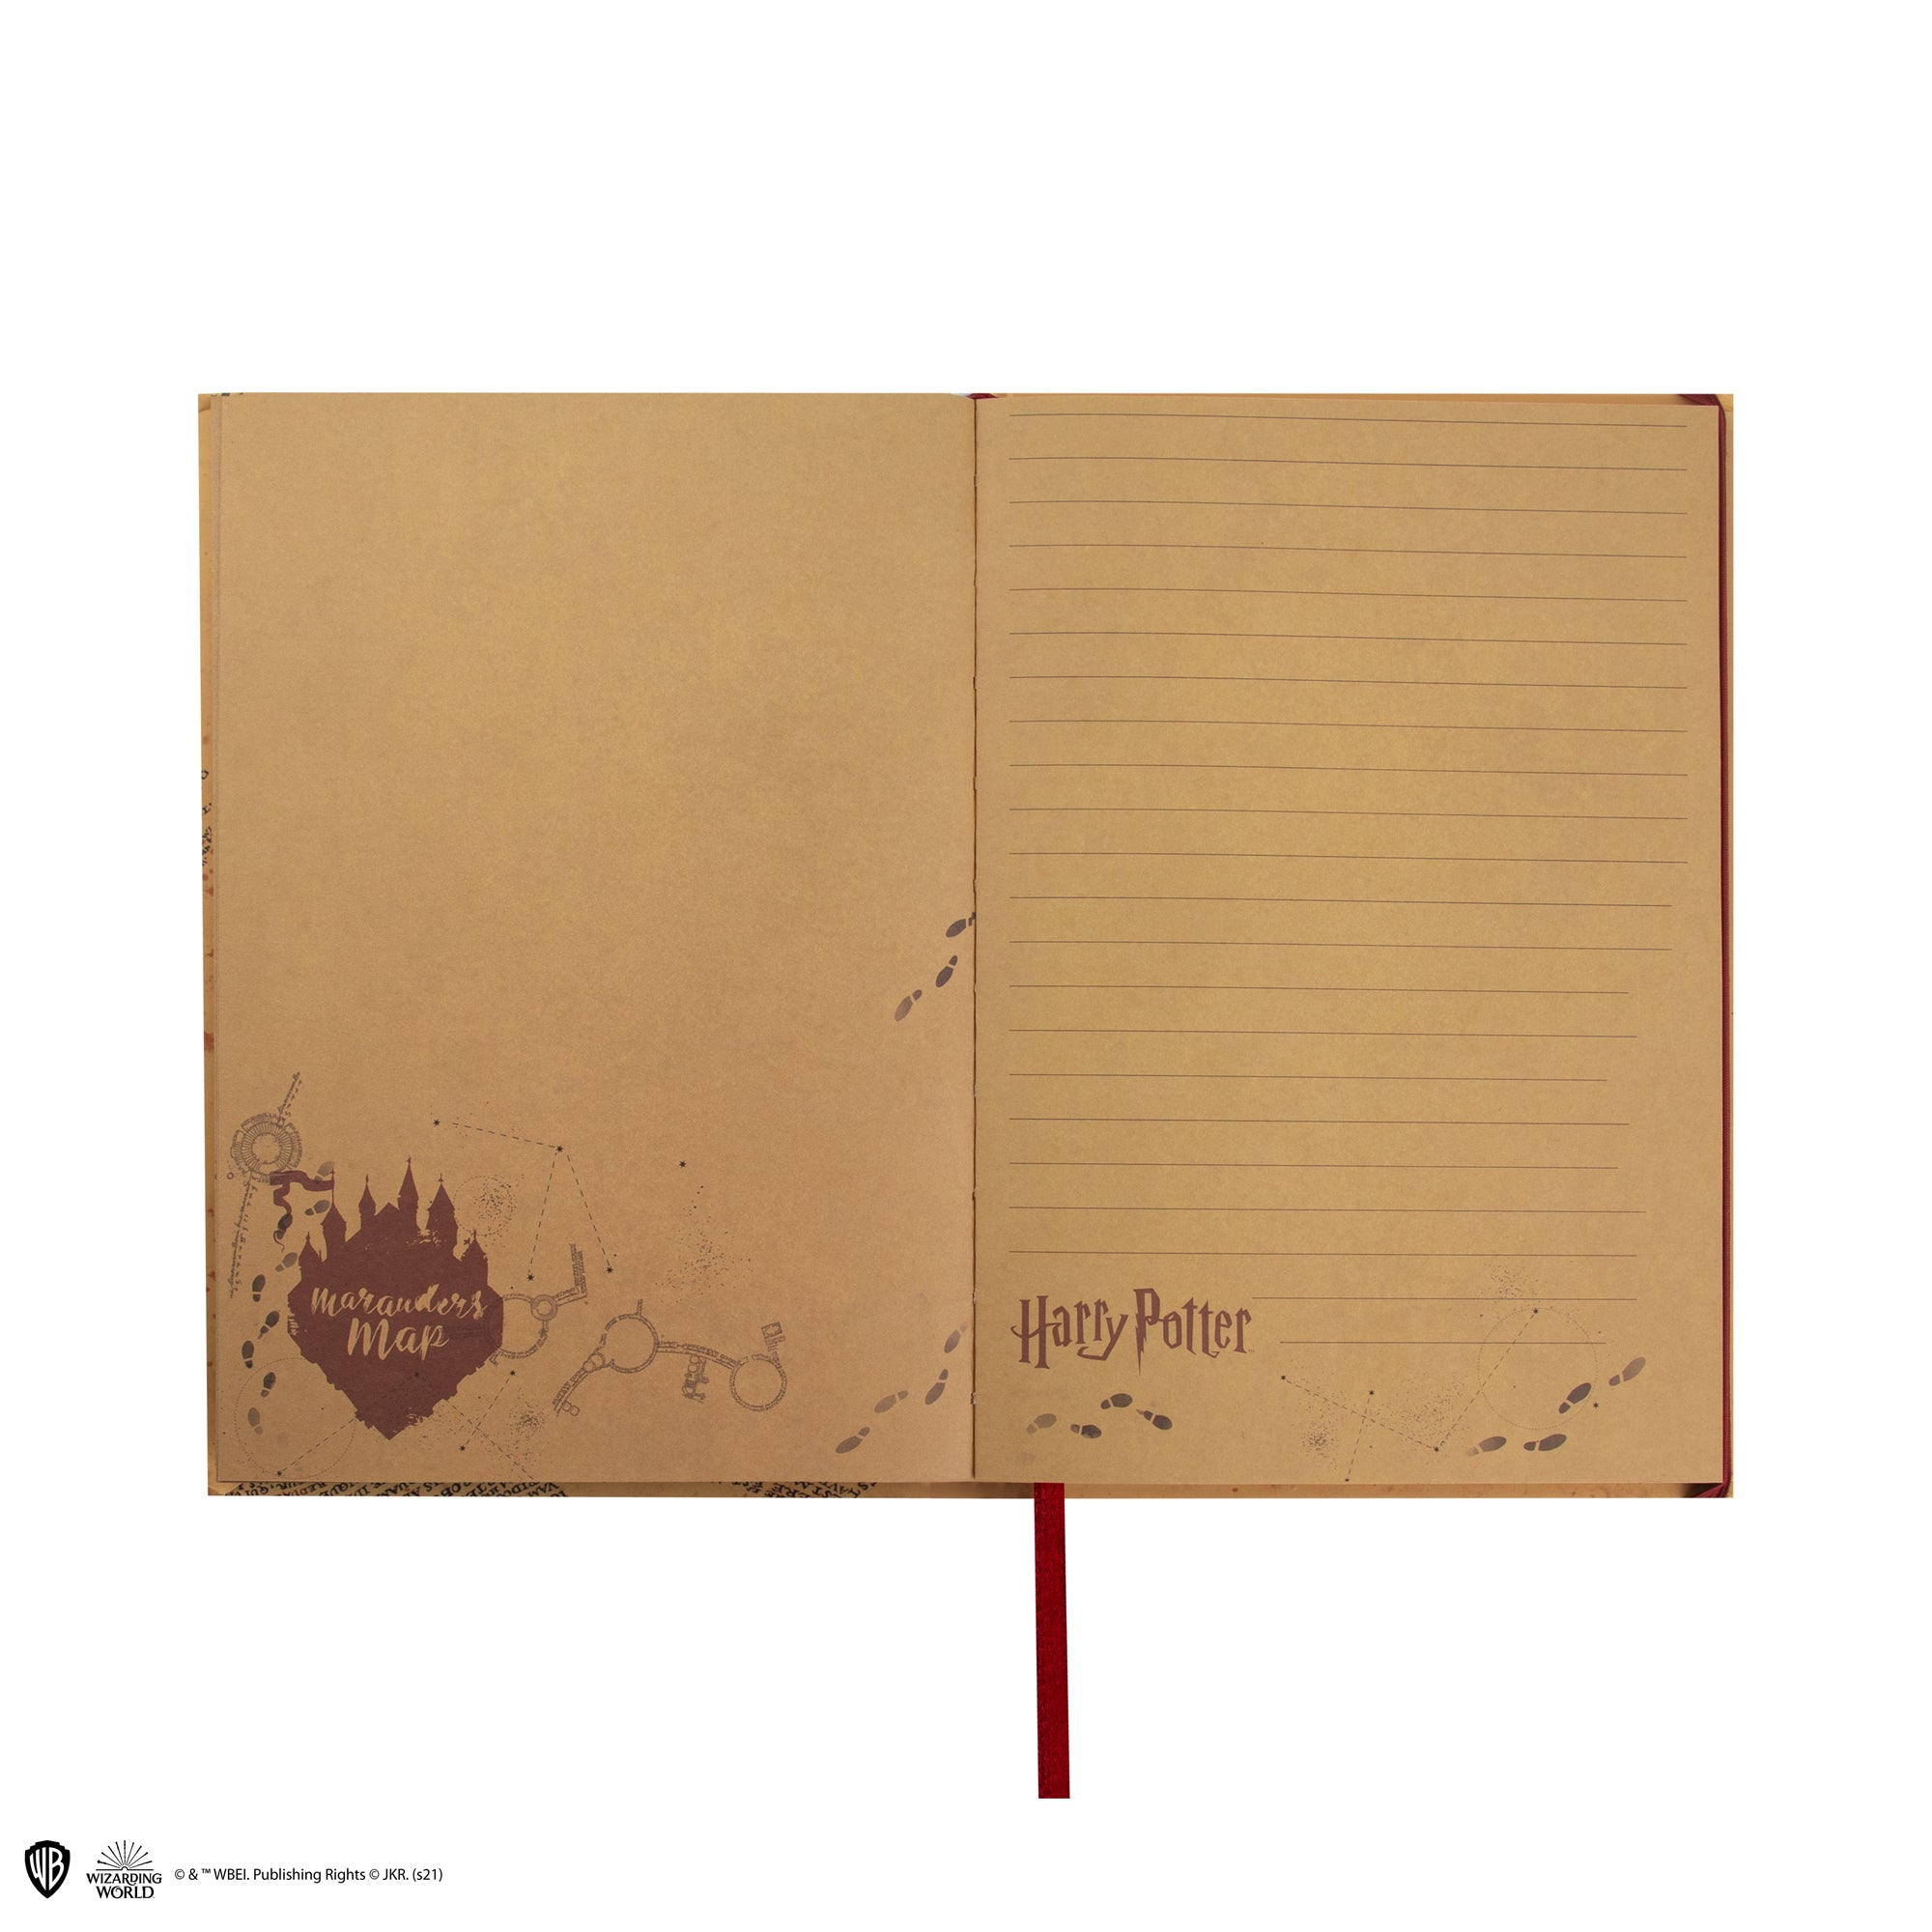 Harry Potter - 2 feuilles de papier cadeau Marauder's Map (50 x 70 cm) -  Imagin'ères